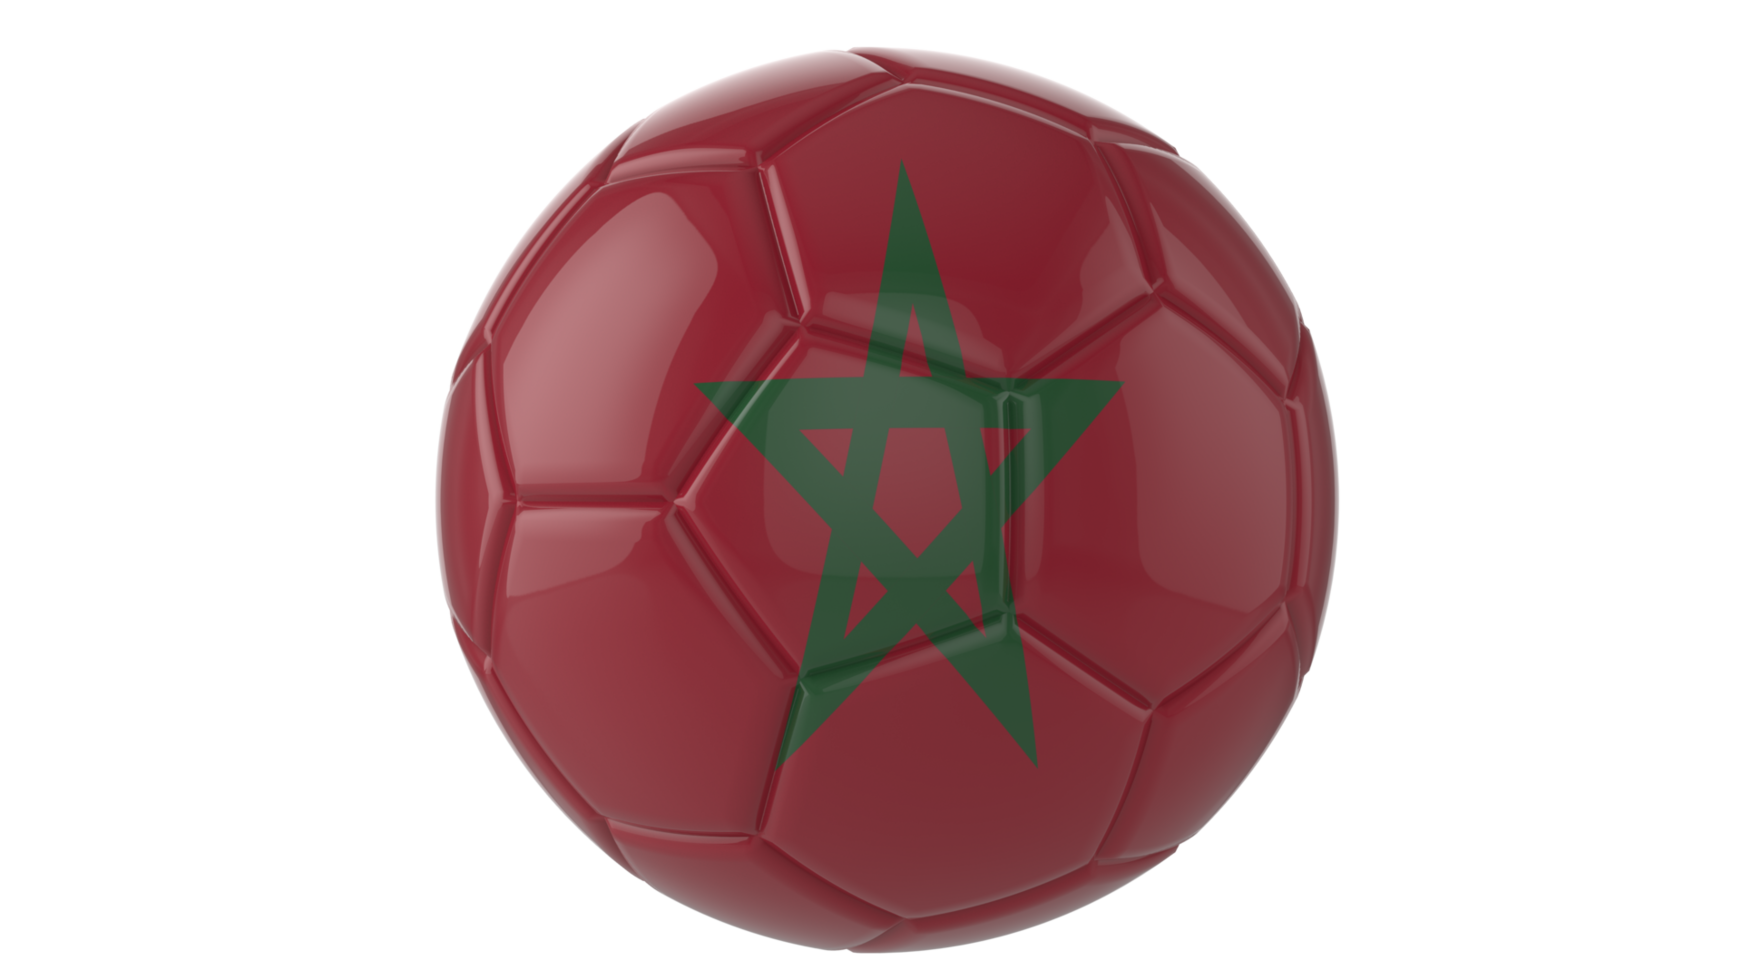 Ballon de football réaliste 3d avec le drapeau du maroc dessus isolé sur fond png transparent